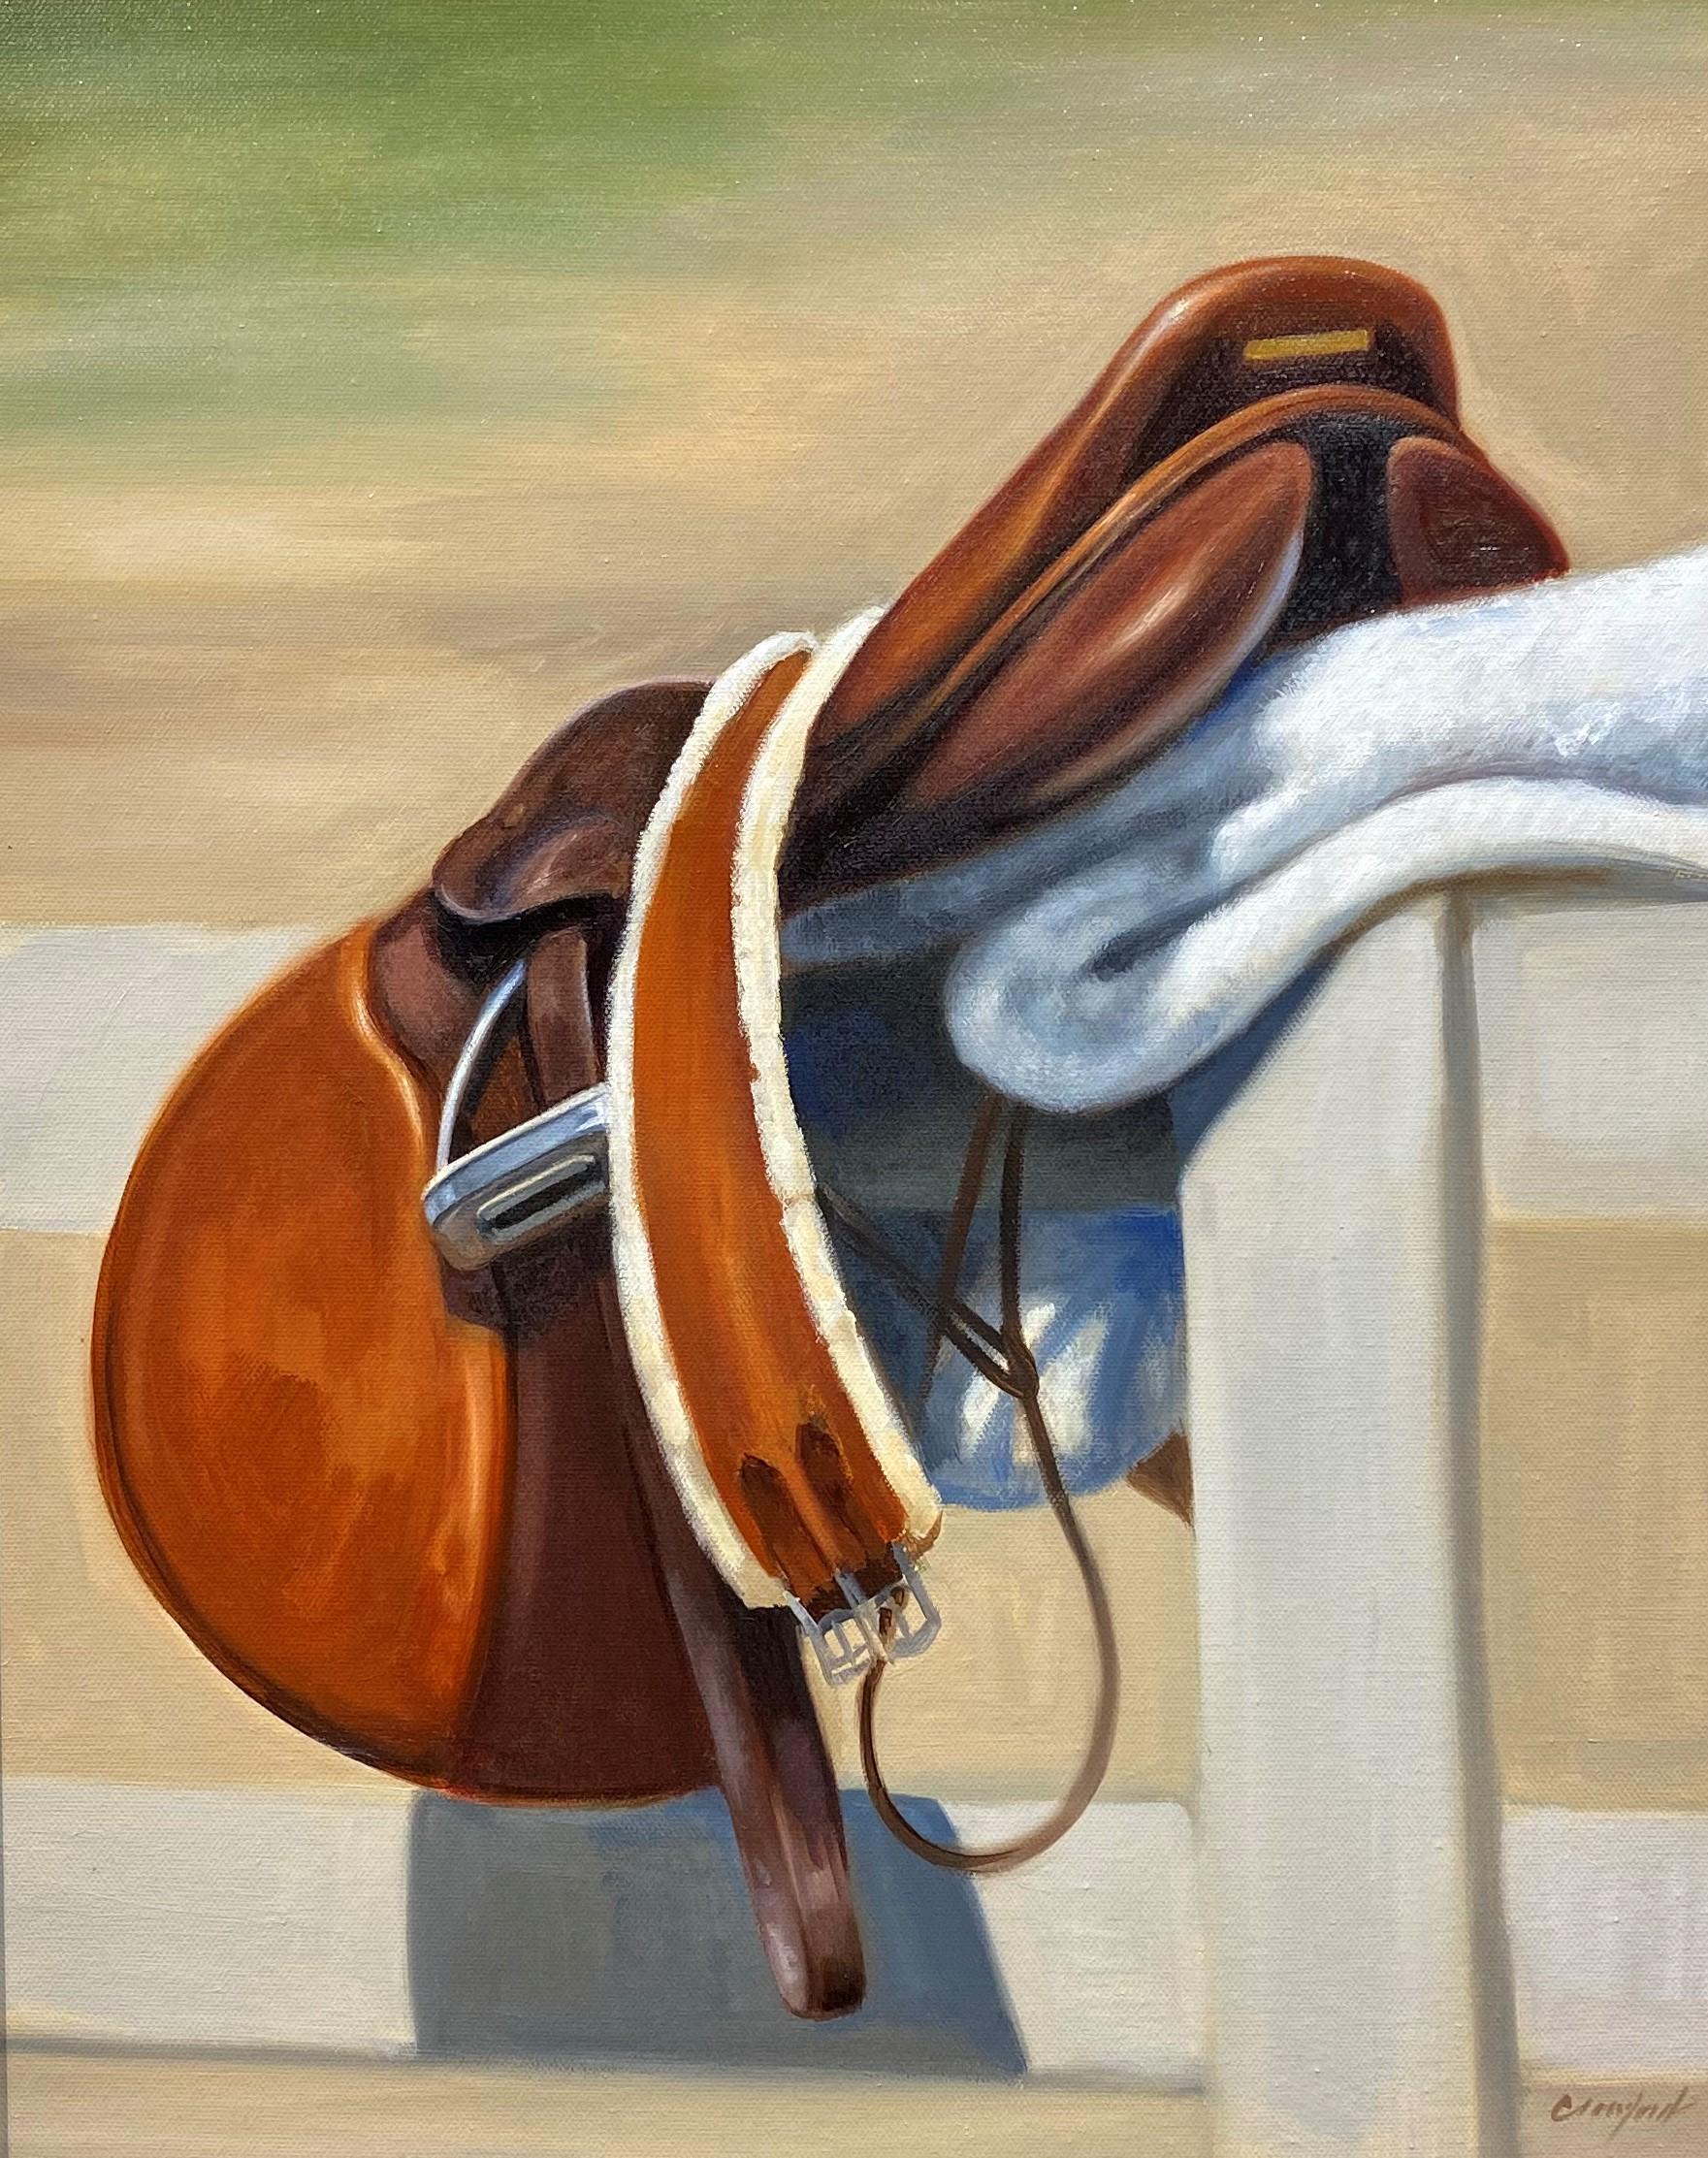 Cette œuvre équestre, "Saddle", est une peinture à l'huile sur toile de 20x16 représentant une selle de cheval marron posée sur une clôture blanche. 

À propos de l'artiste :
Les œuvres de Janet Crawford illustrent le style de vie équestre.